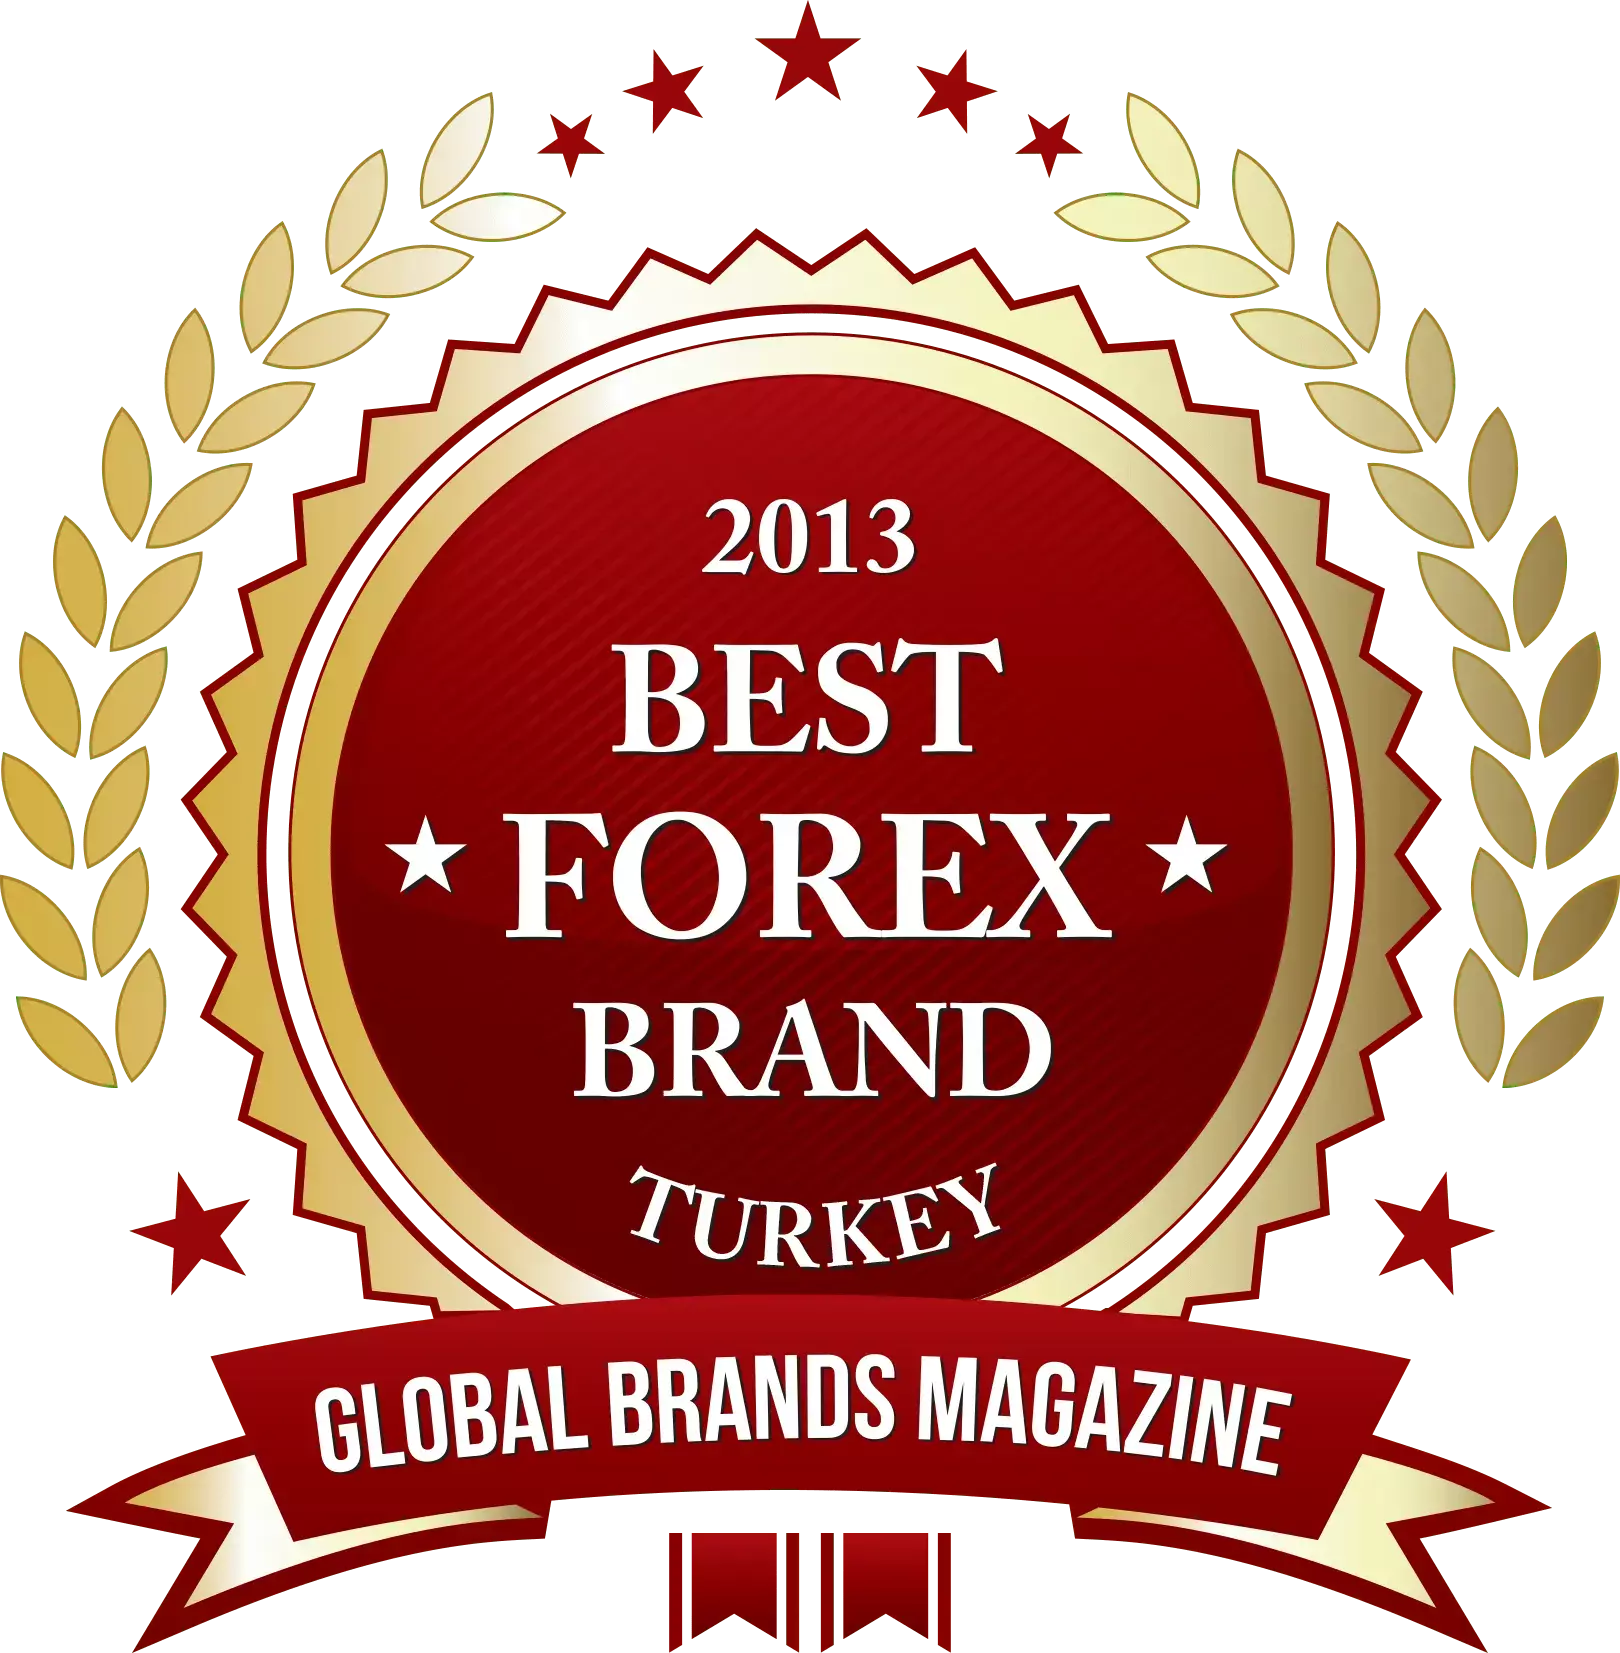 Best Forex Brand 2013 Turkey Global Brands Magazine